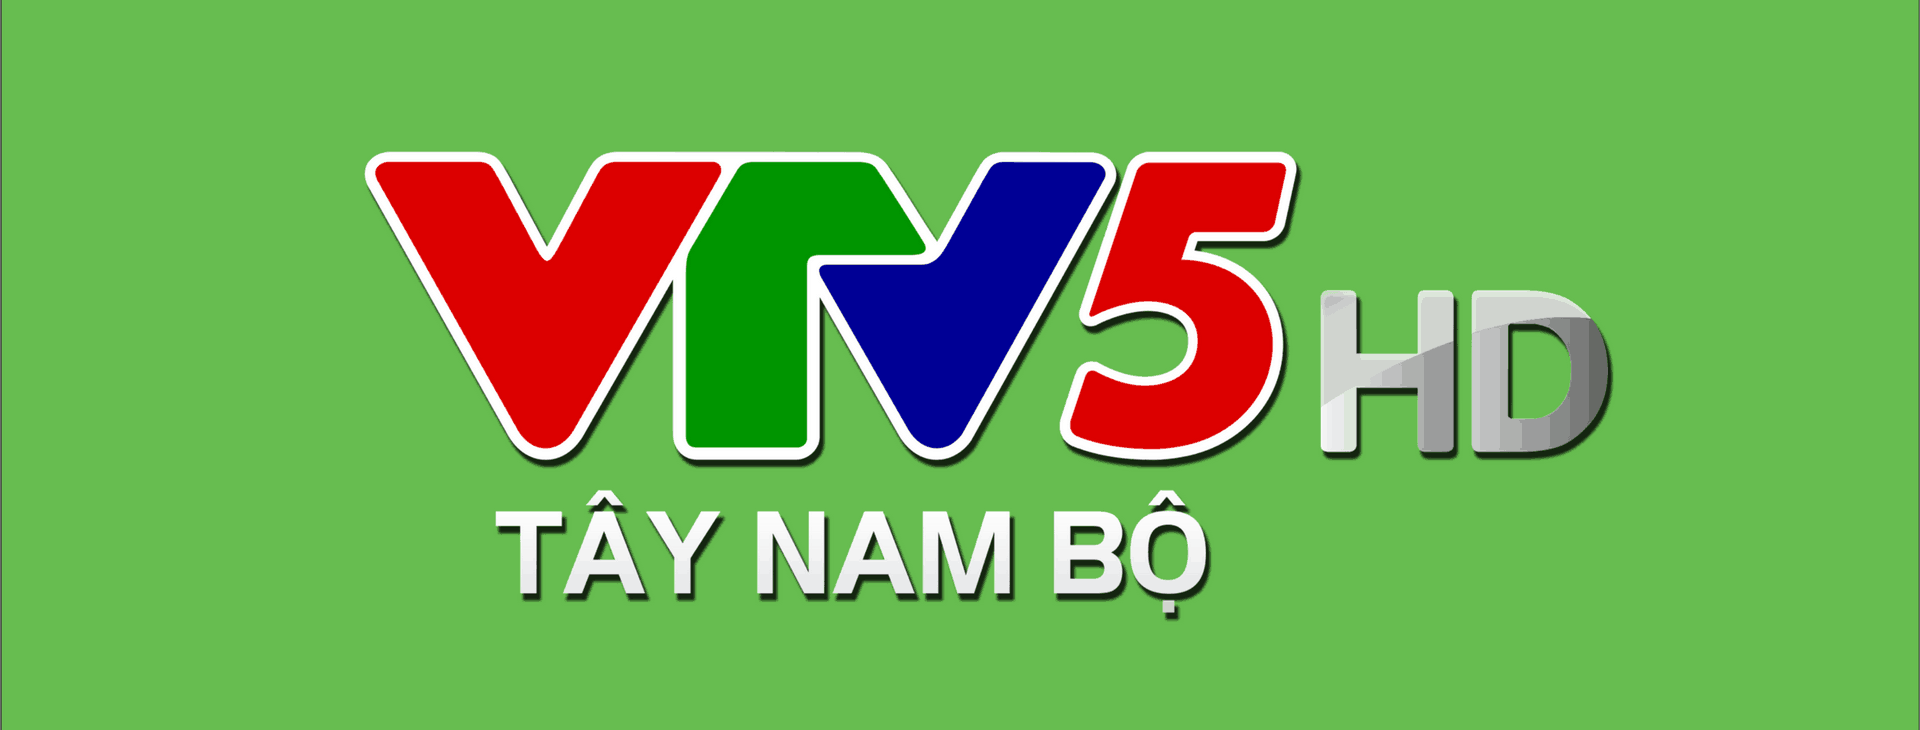 Online U23 Viet Nam vs U23 Brunei VTV5